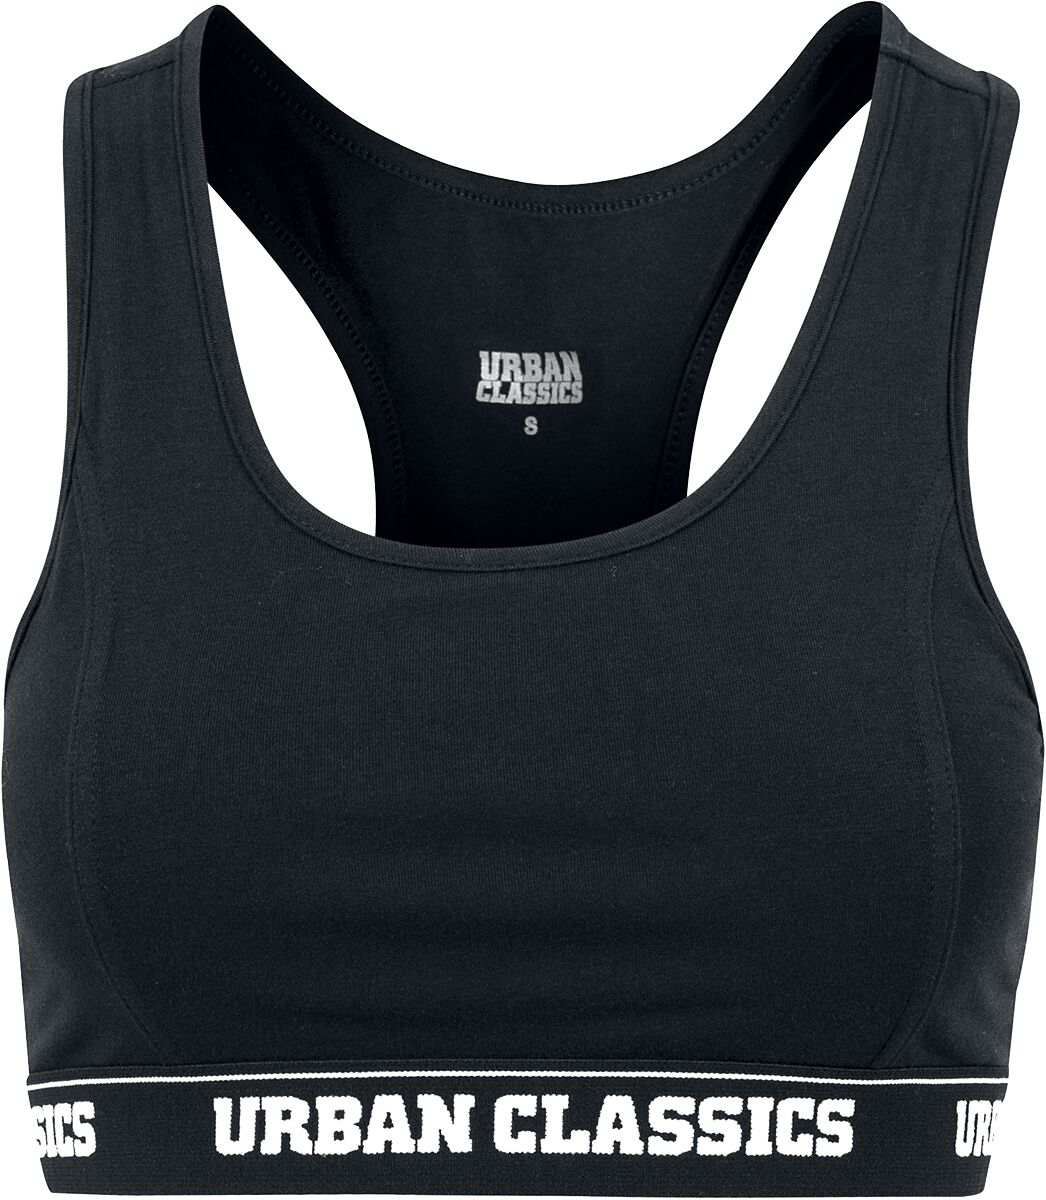 Bustier de Urban Classics - Brassière Logo - XS à 5XL - pour Femme - noir